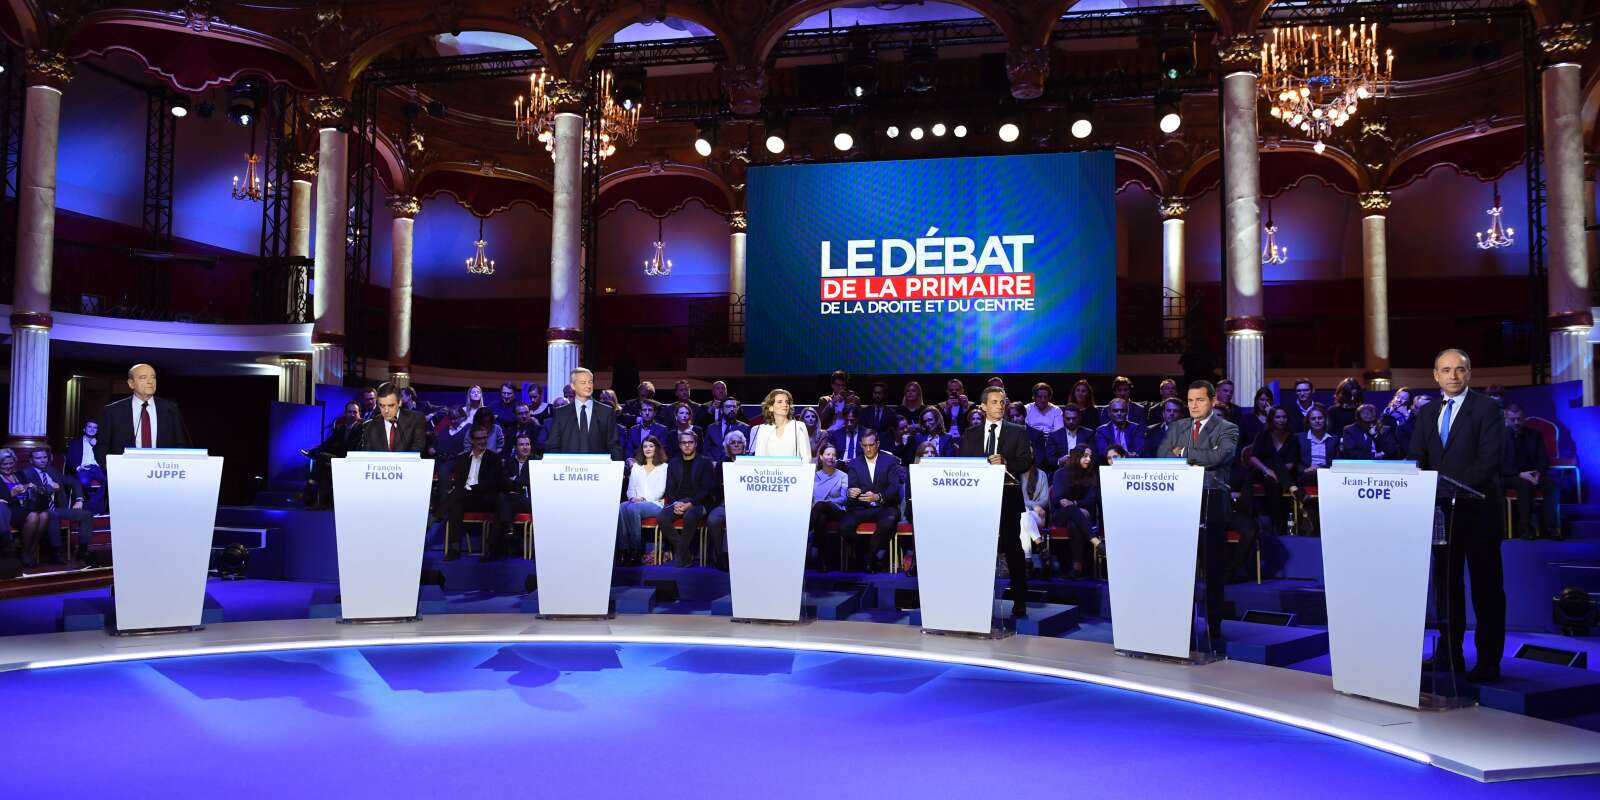 Bruno Le Maire, Alain Juppé, Nathalie Kosciusko-Morizet, Nicolas Sarkozy, Jean-François Copé, Frédéric Poisson et François Fillon participent au deuxième débat de la primaire de la droite.